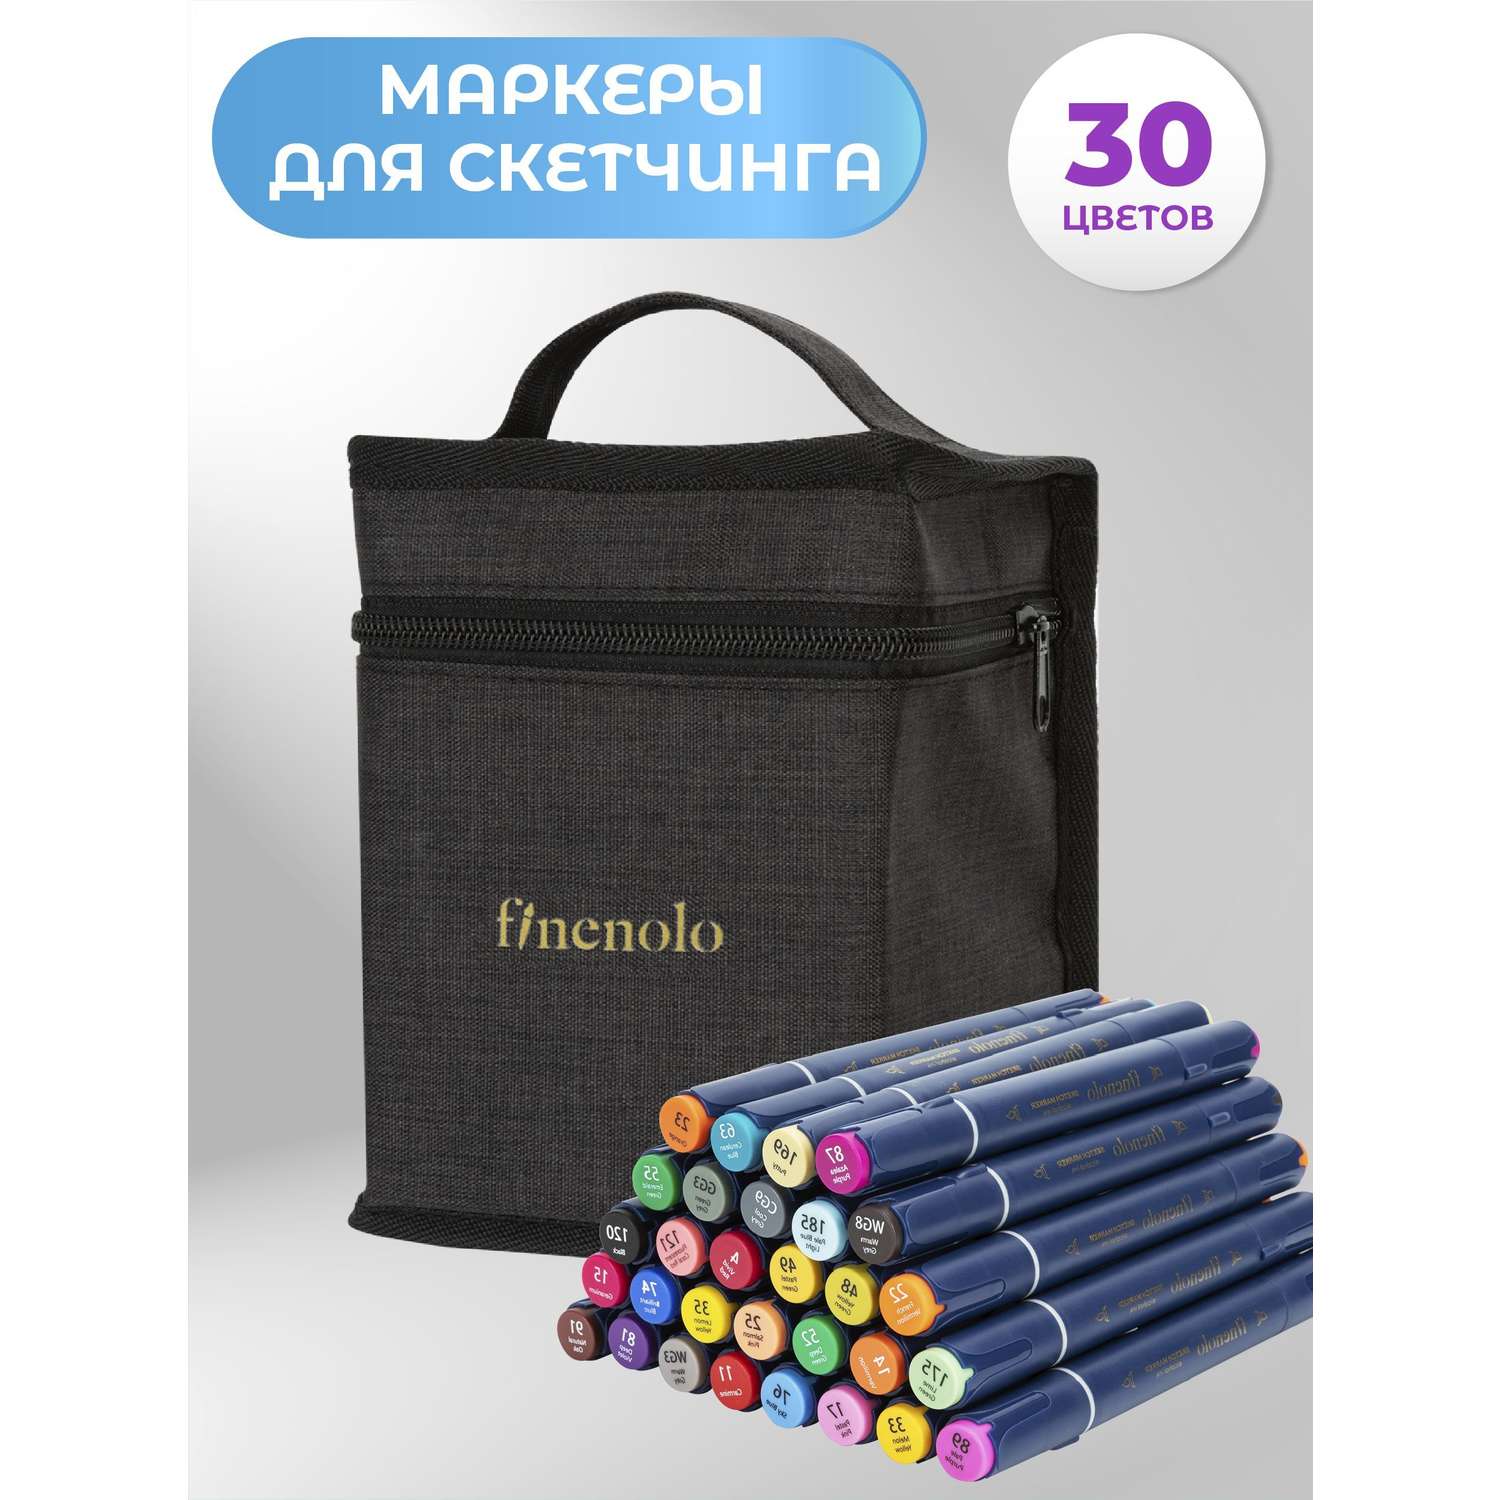 Набор спиртовых маркеров Finenolo 2 пера:кисть+долото 30 цветов в сумке-пенале - фото 1